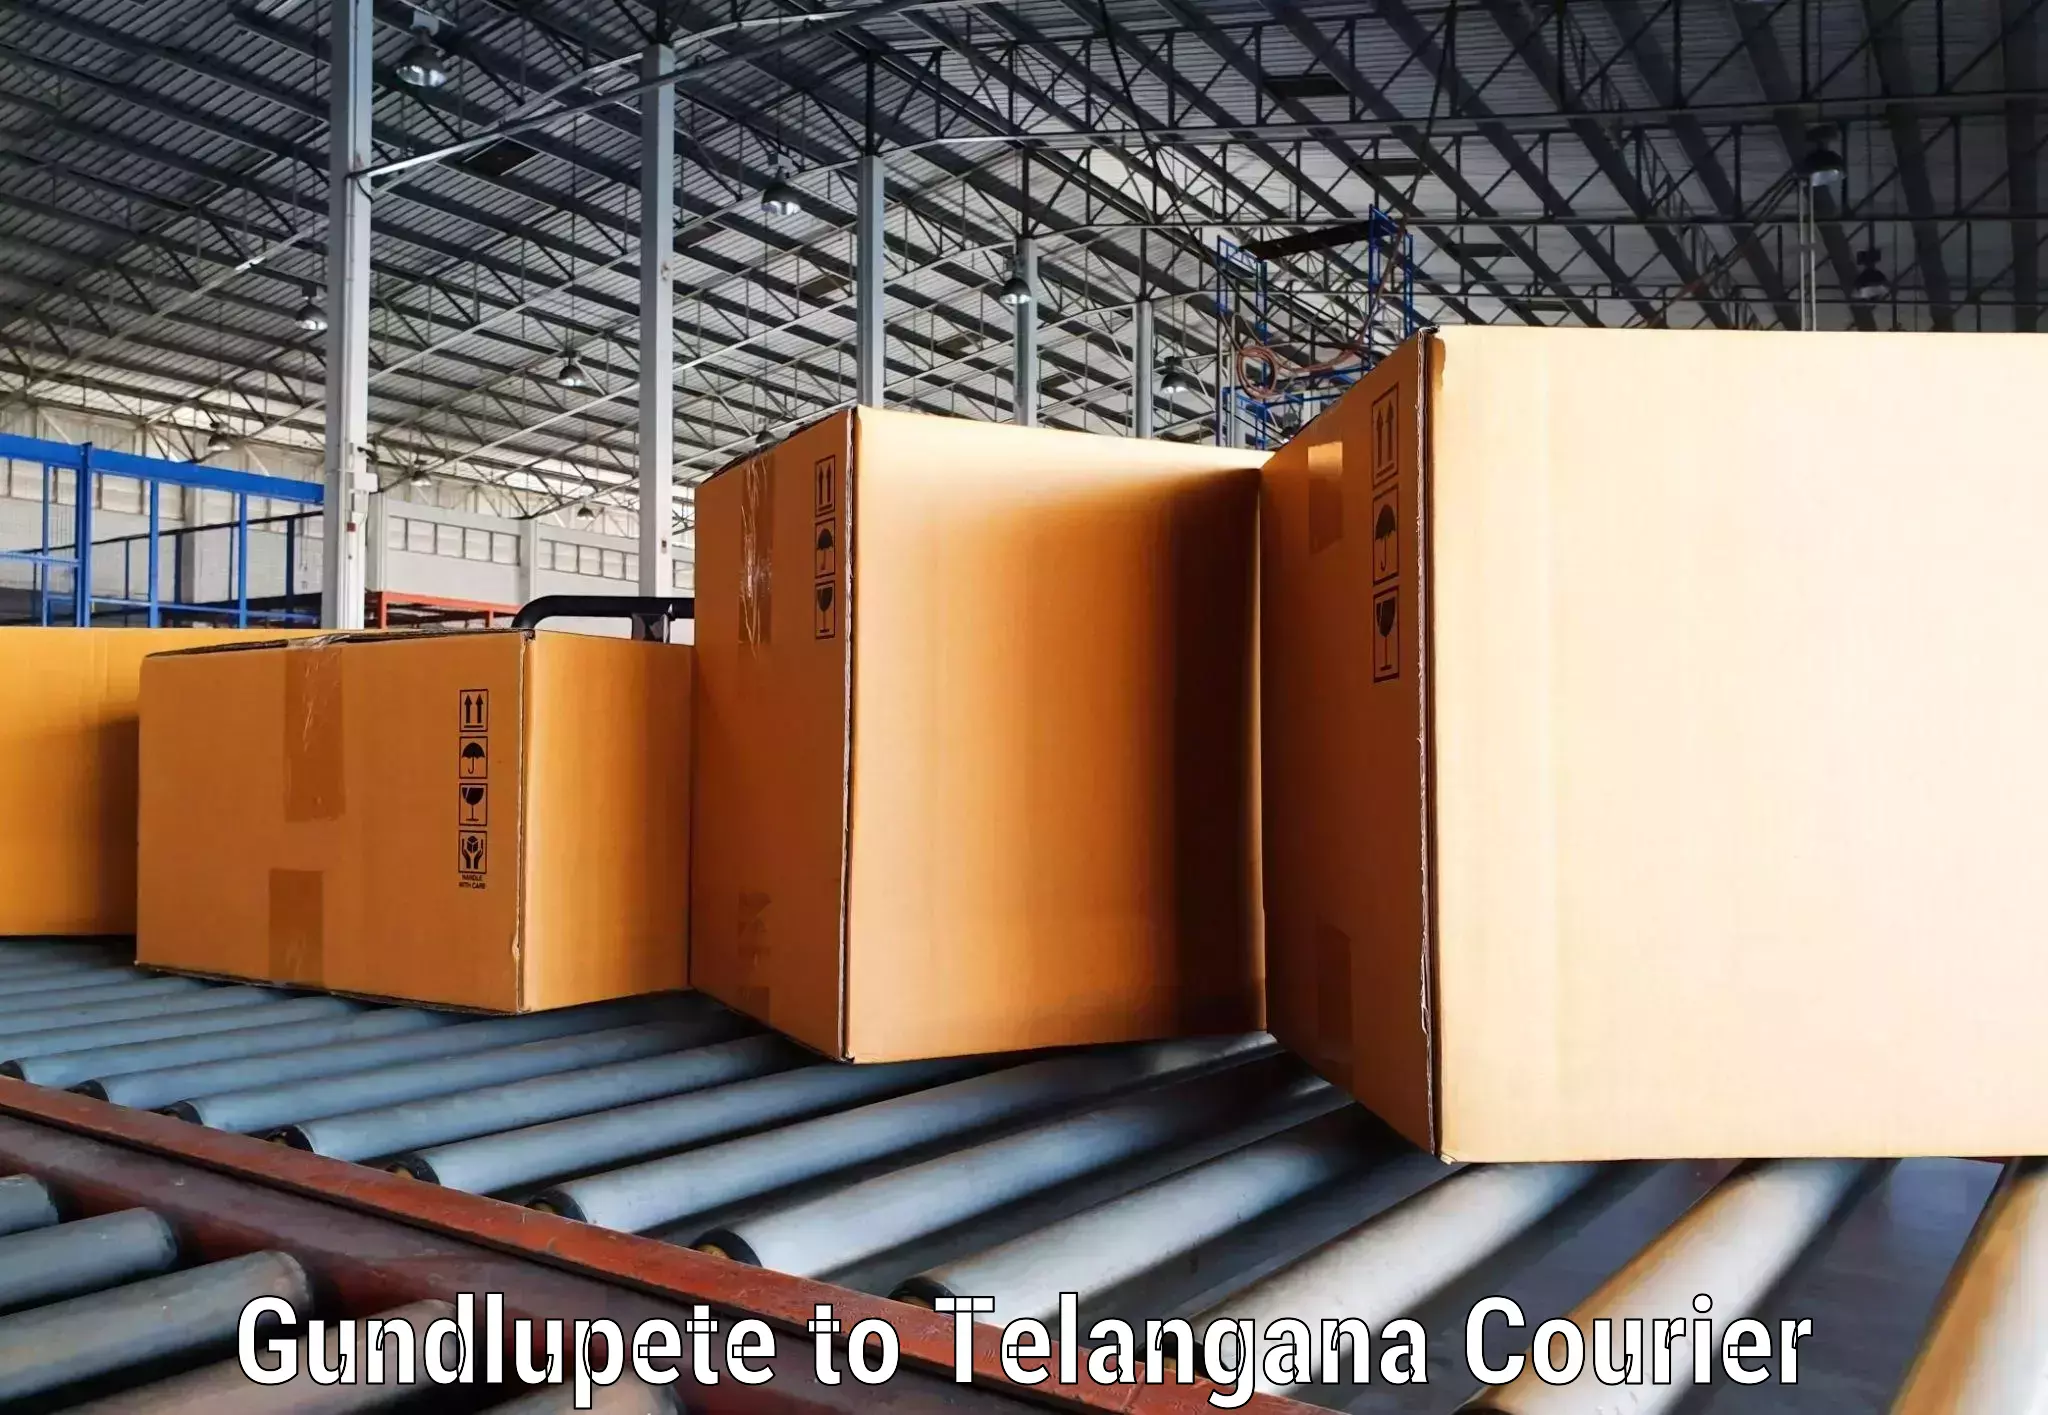 Quality courier partnerships Gundlupete to Kusumanchi